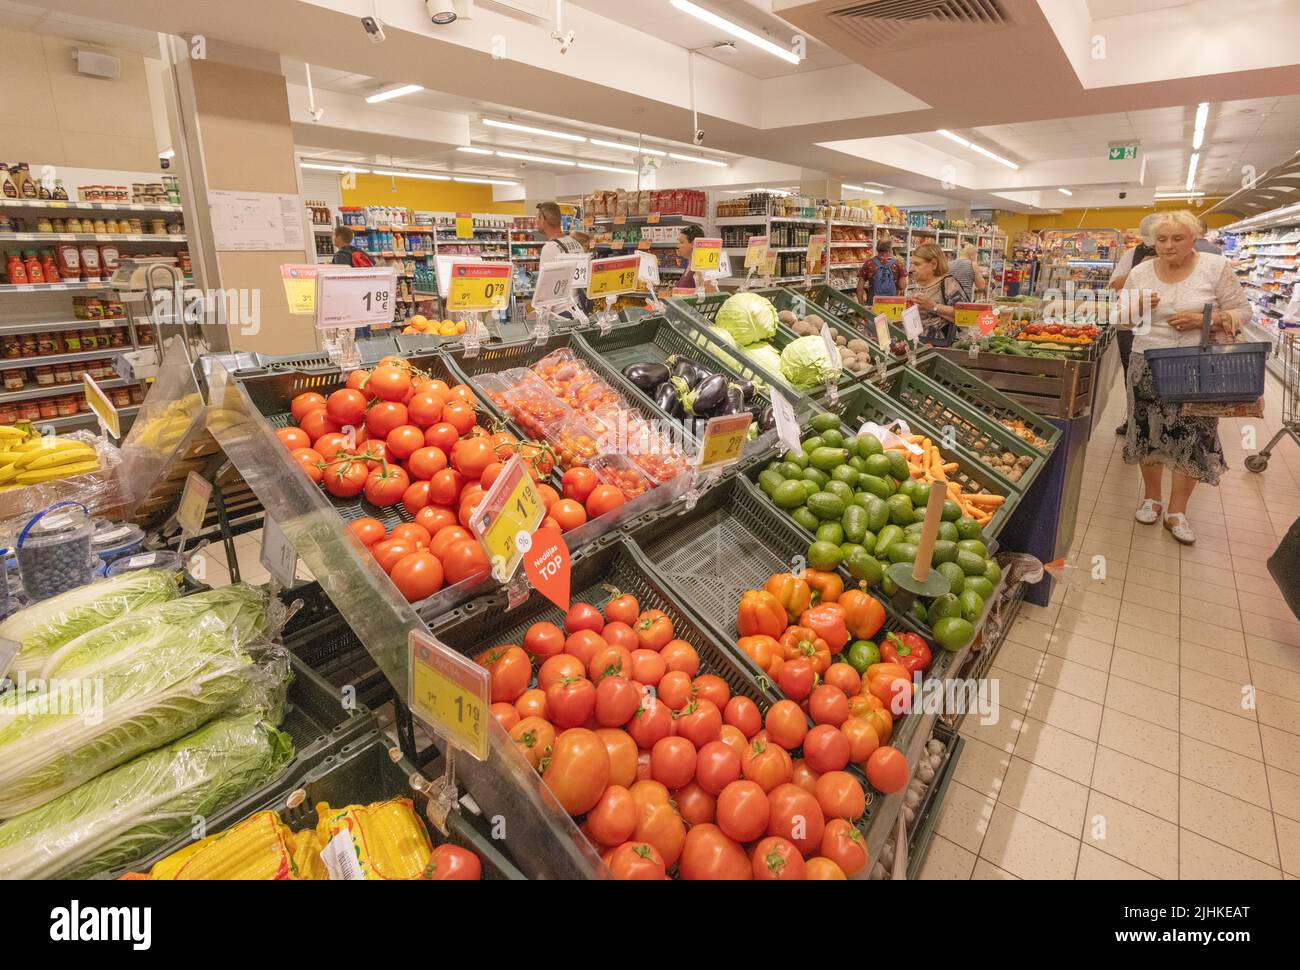 Intérieur de supermarché Riga - les gens magasinent à l'intérieur d'un supermarché local, achetant de la nourriture; Riga, Lettonie Europe Banque D'Images